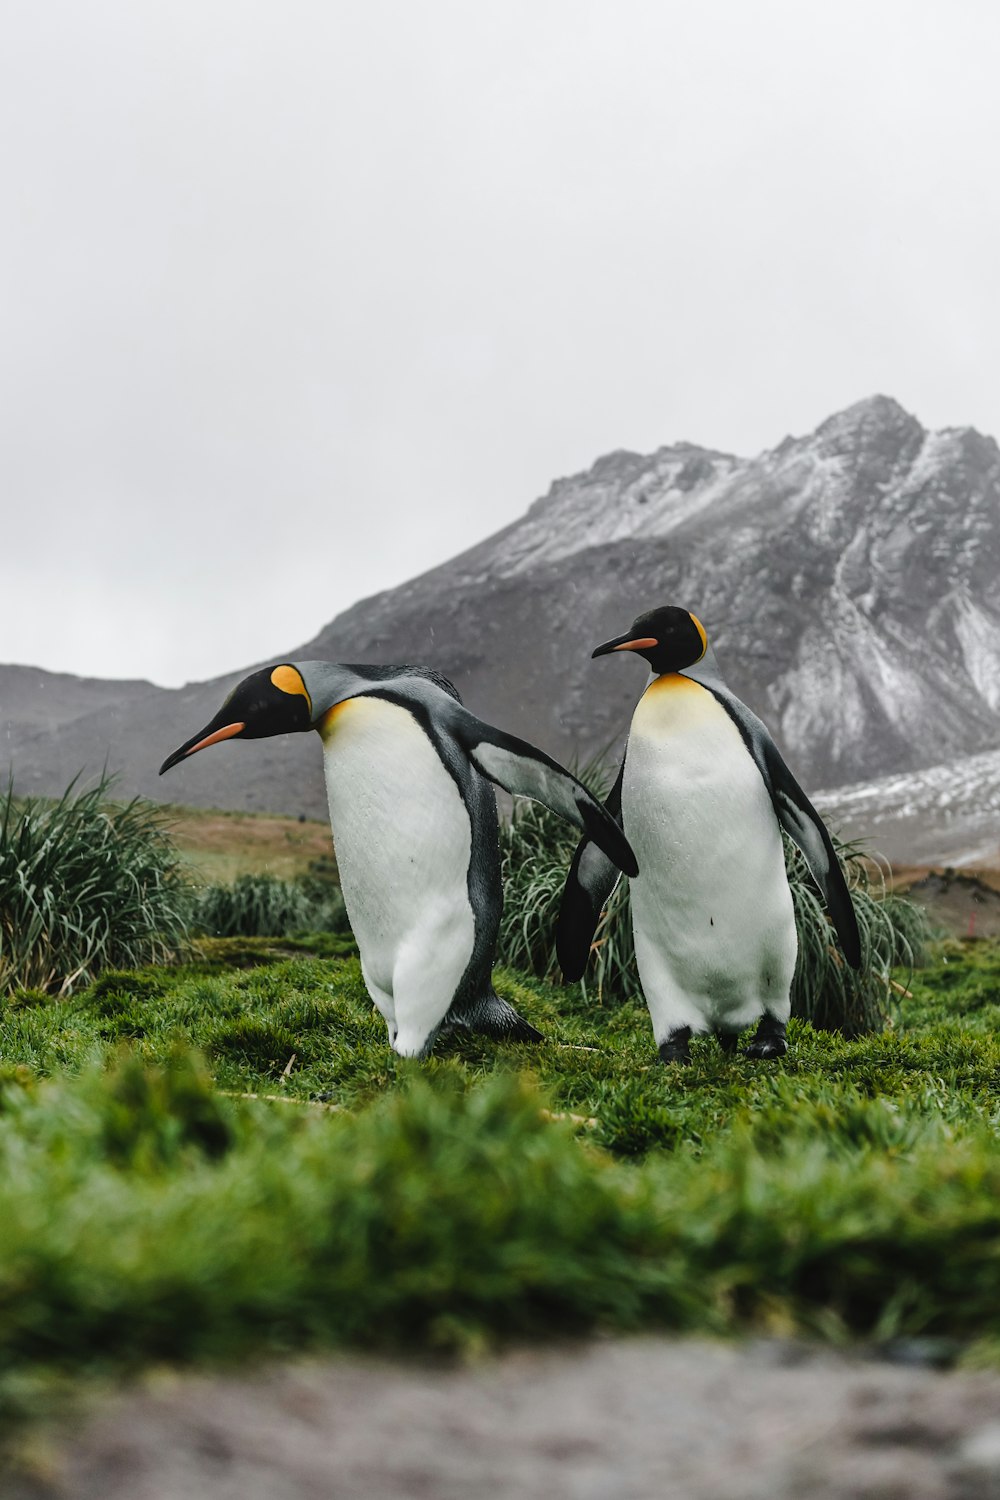 昼間は緑の芝生の上に3羽のペンギン